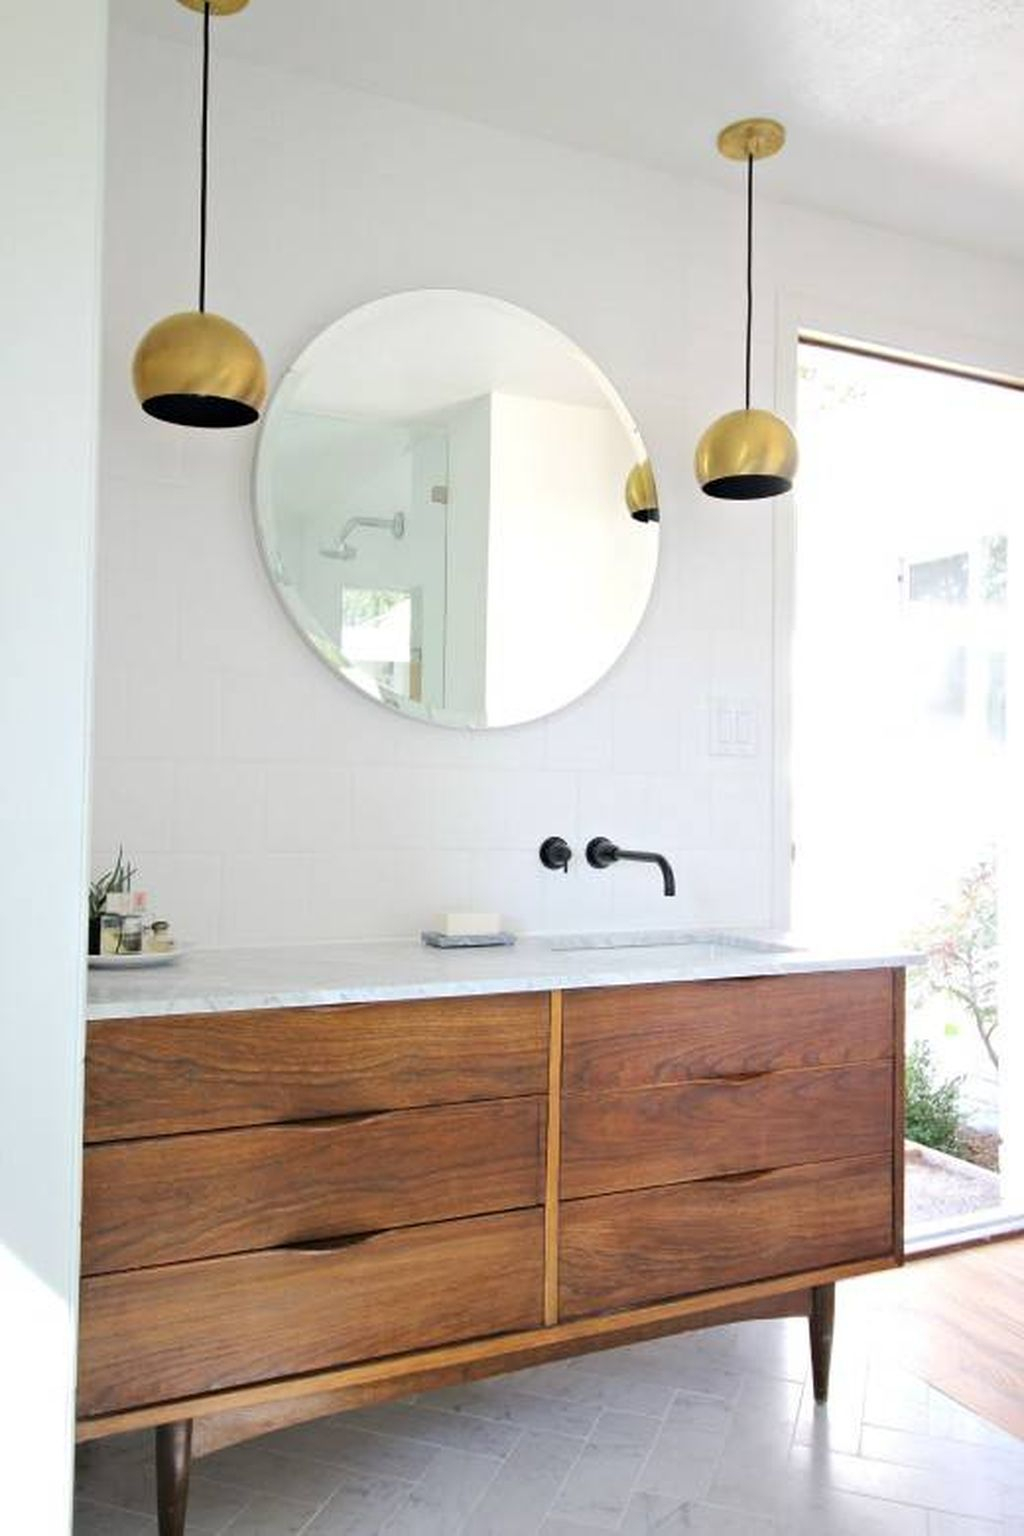 Inspiring Rustic Bathroom Vanity Remodel Ideas 46